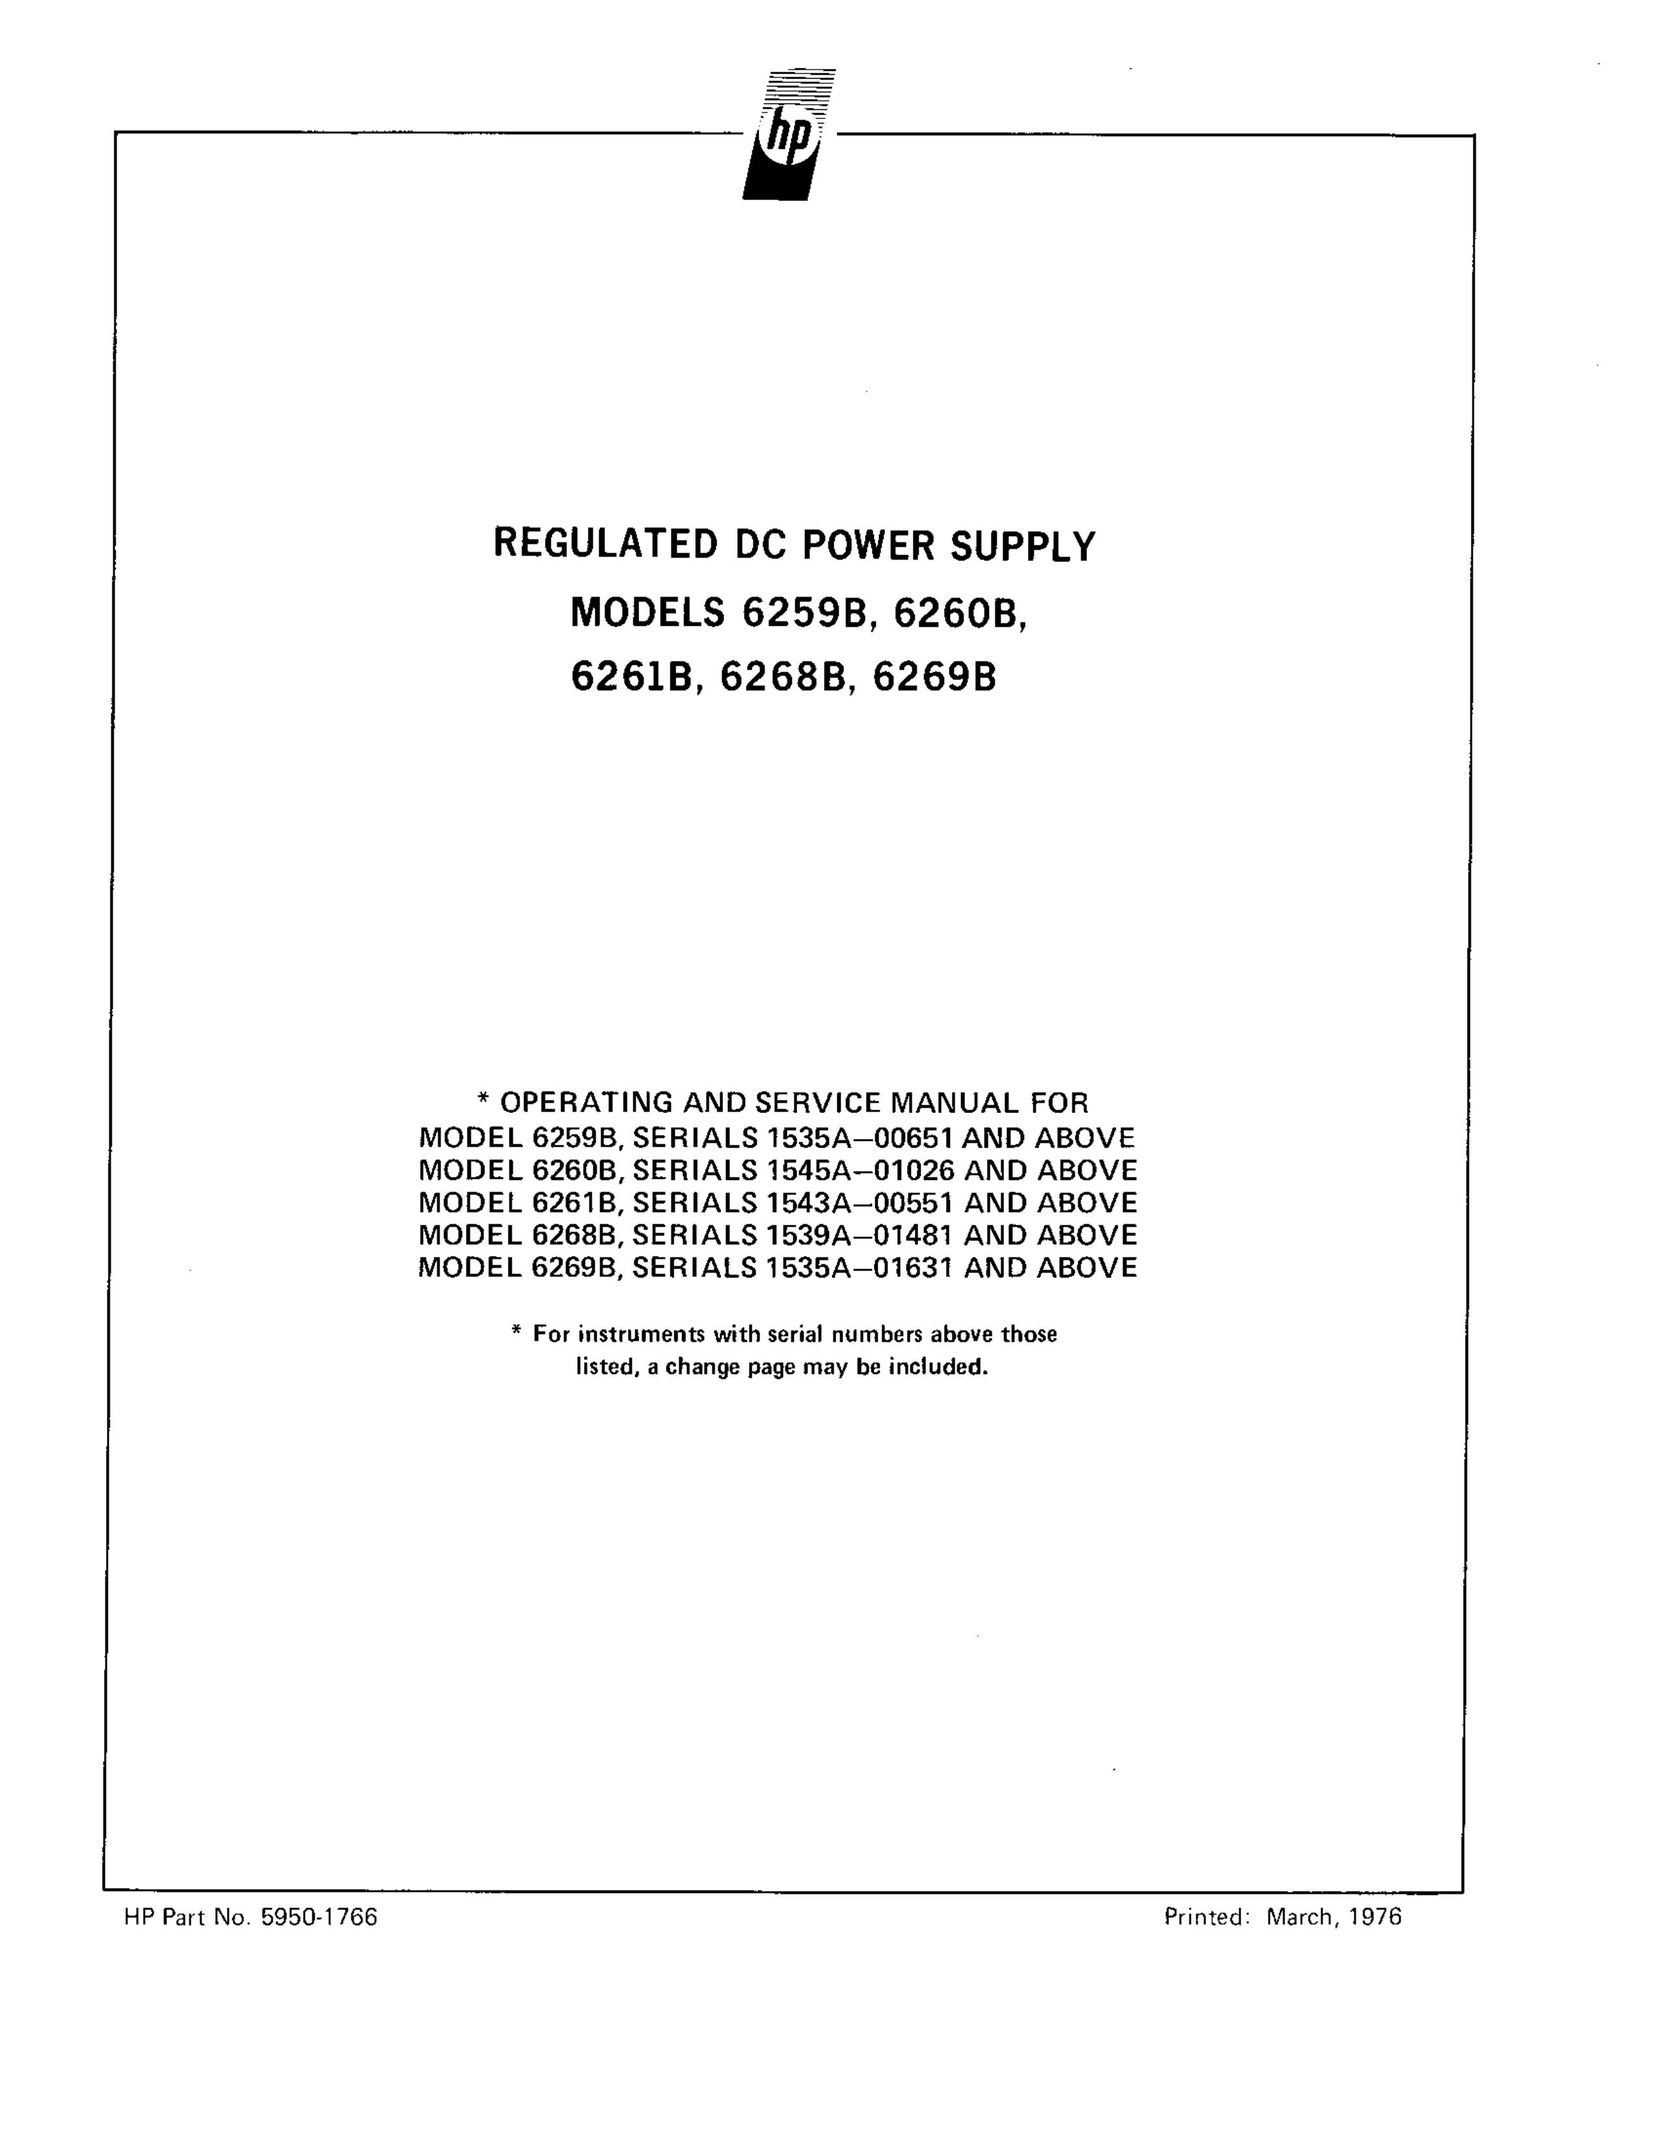 HP (Hewlett-Packard) 6268B Power Supply User Manual